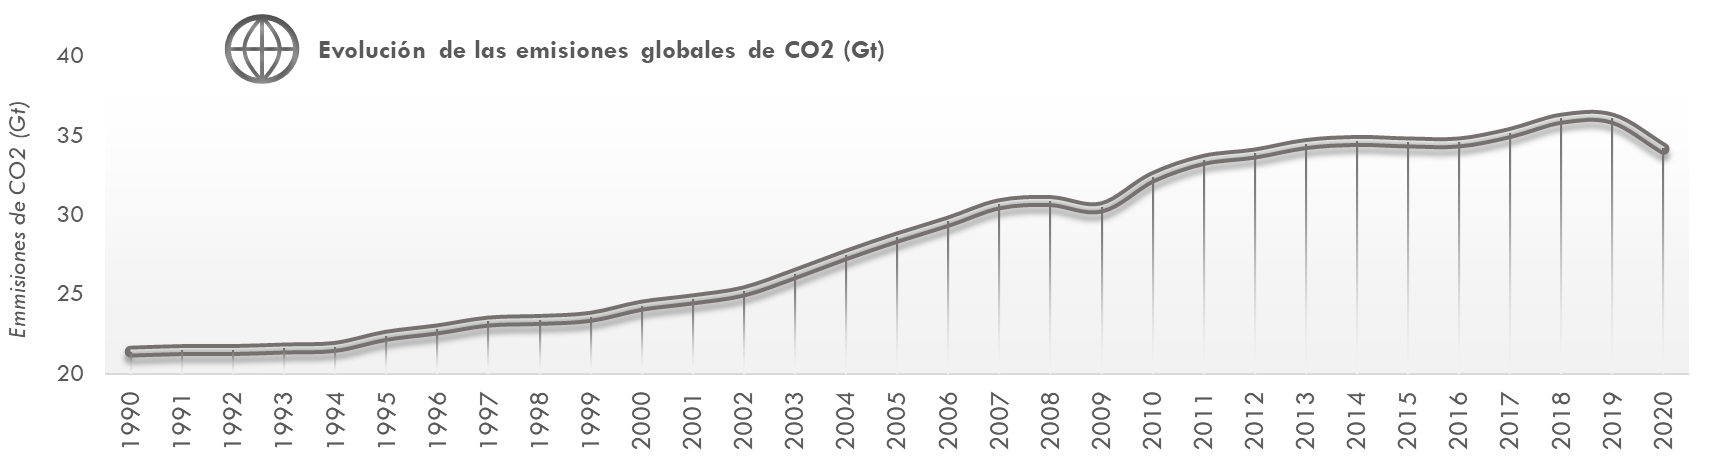 ráfico6 Evoluciónde las emisiones de CO2en el mundo (Gt CO2eq). Años 1990-2020. La explicación del gráfico se detalla a continuación de la imagen.